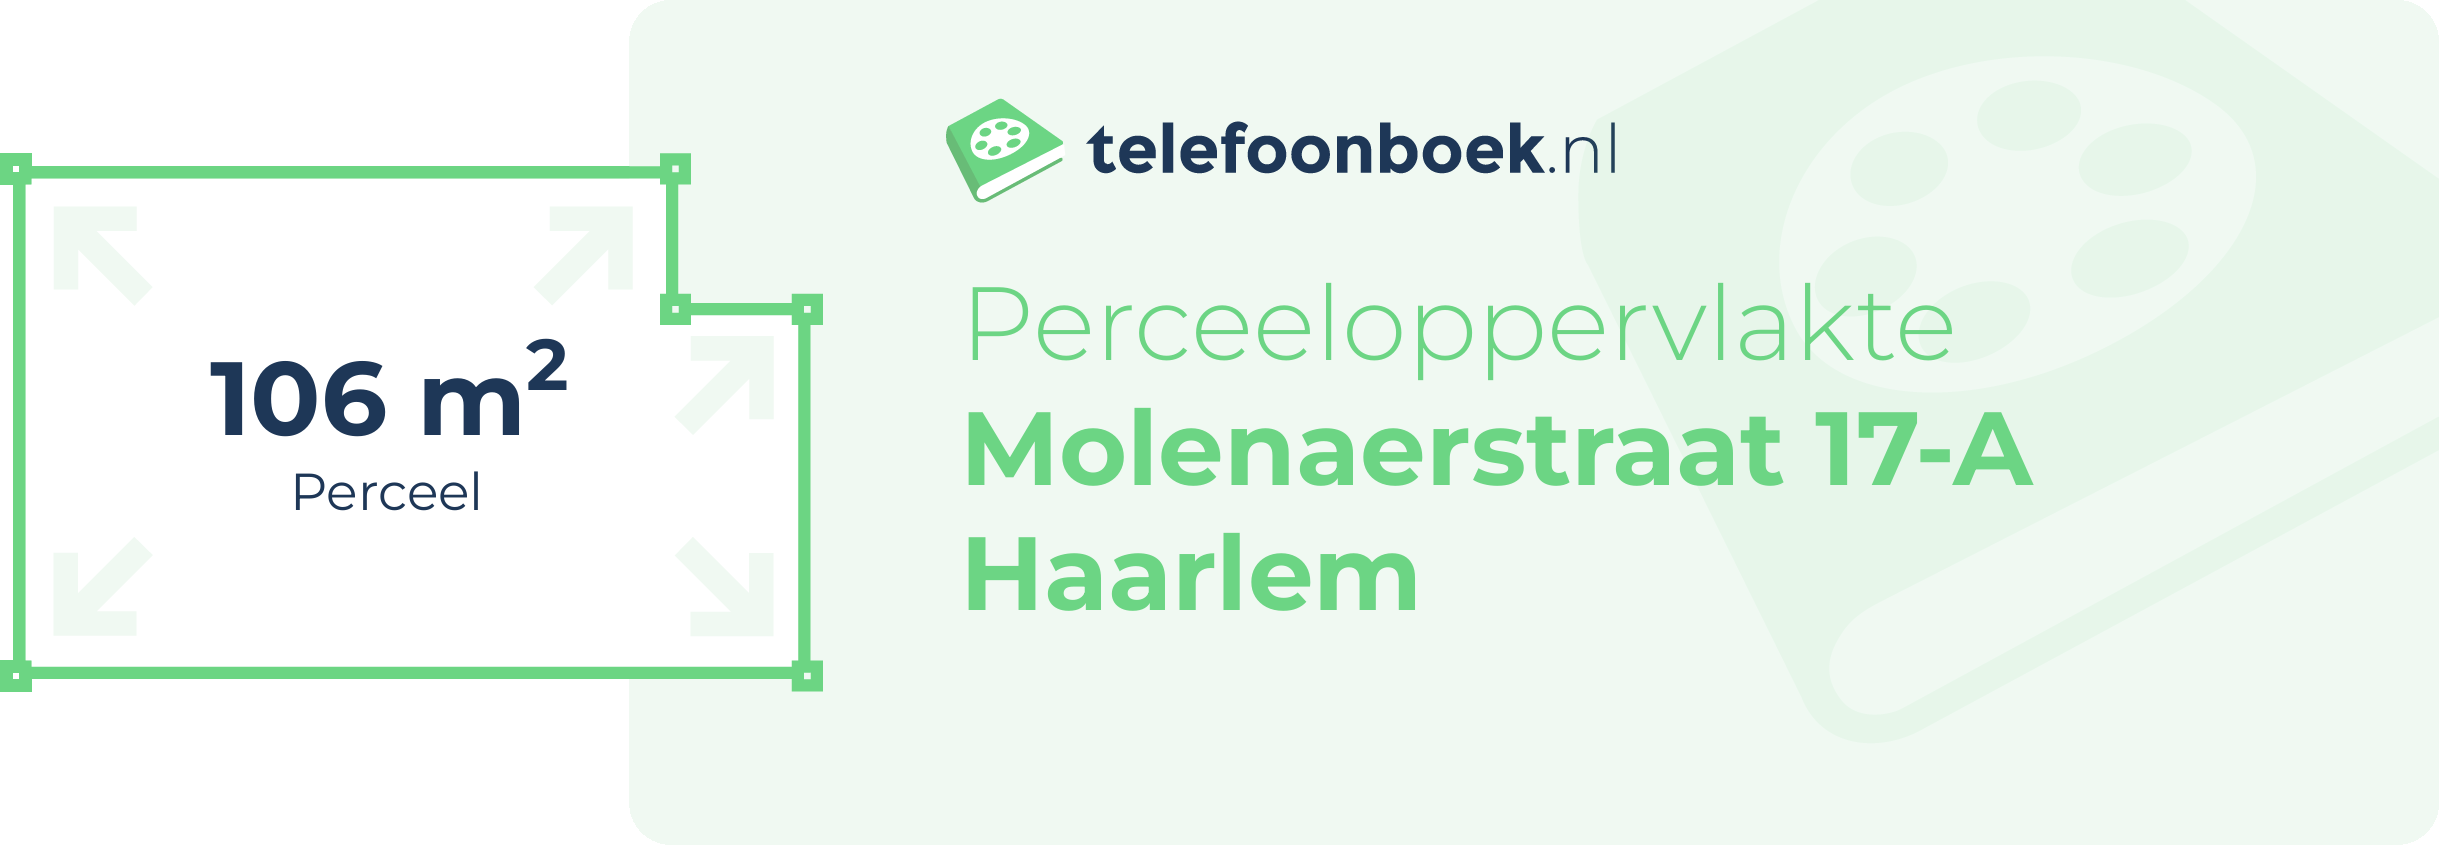 Perceeloppervlakte Molenaerstraat 17-A Haarlem